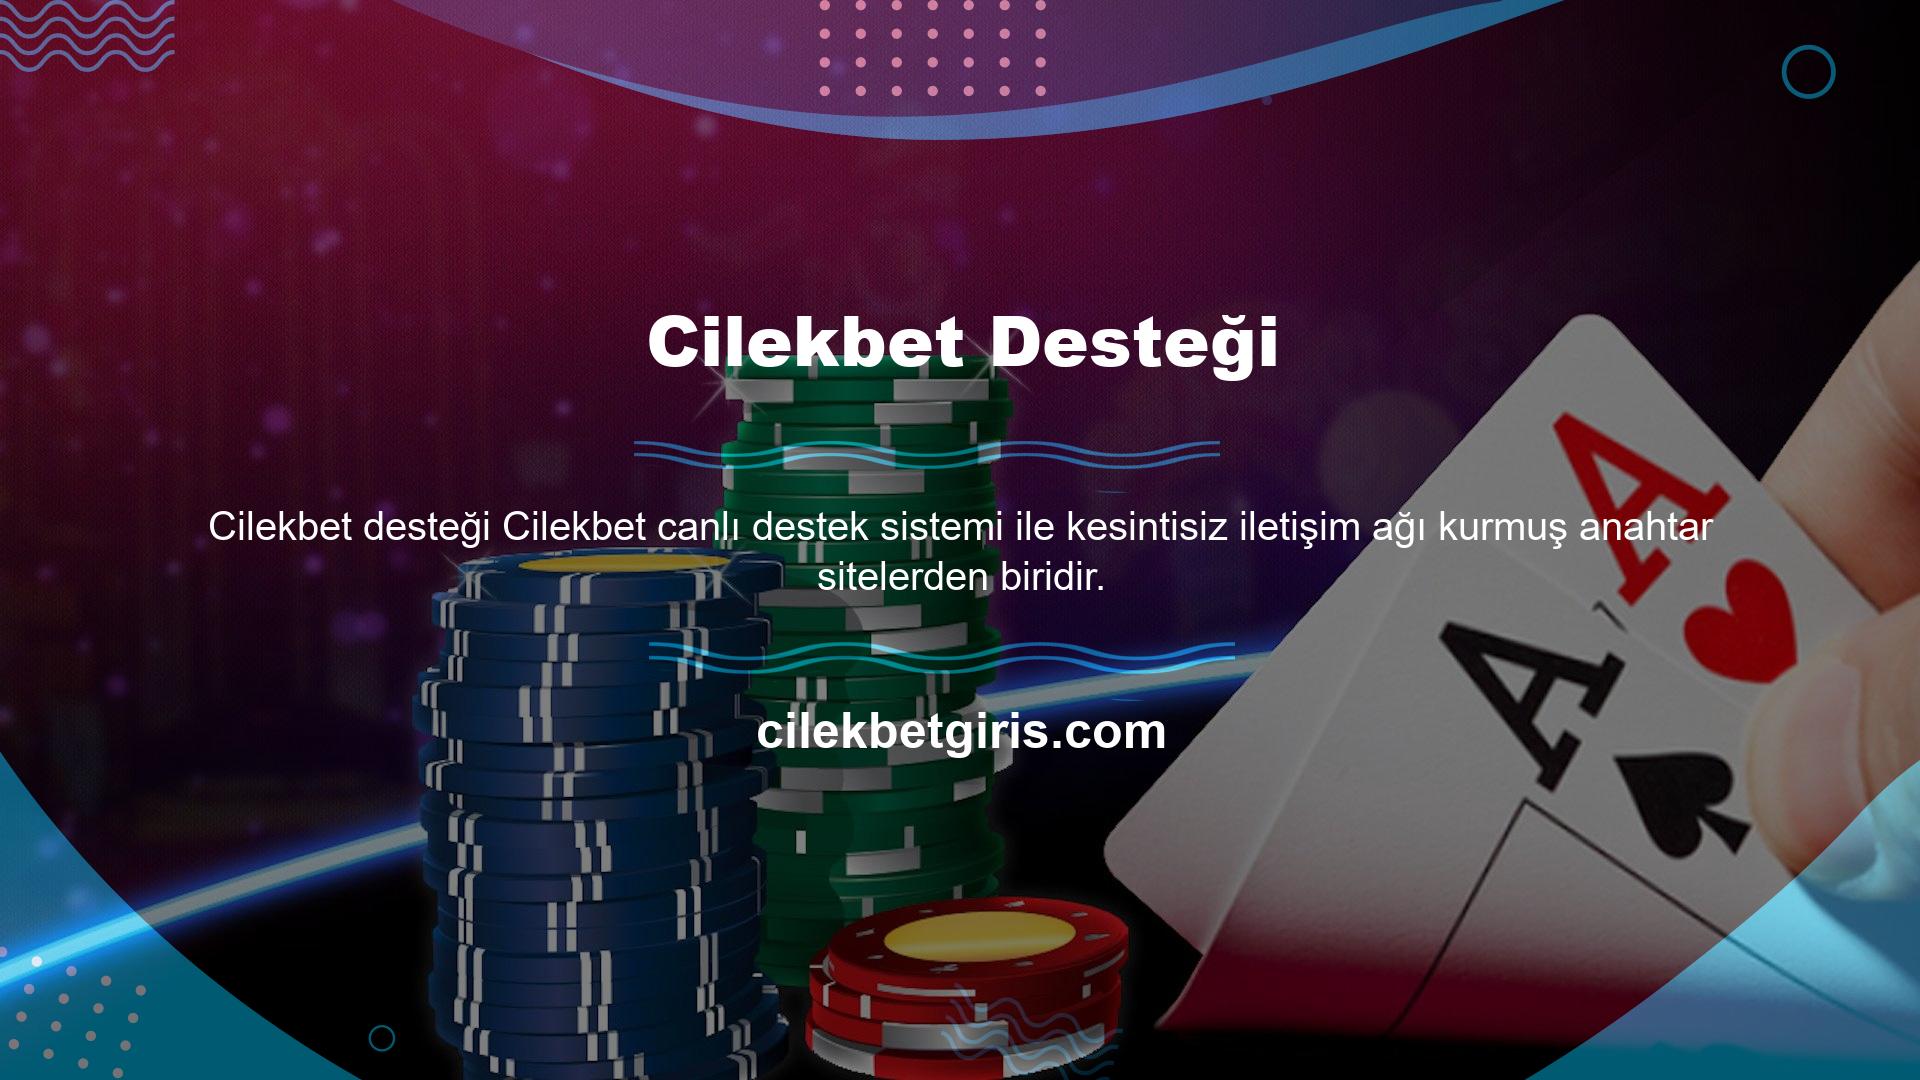 Türkiye'nin ve dünyanın en popüler bahis ve casino sitelerinden biri olan Cilekbet, deneyimli ve bilgili canlı destek personeli sağlayarak üyelerinin potansiyelini her geçen gün geliştirmektedir